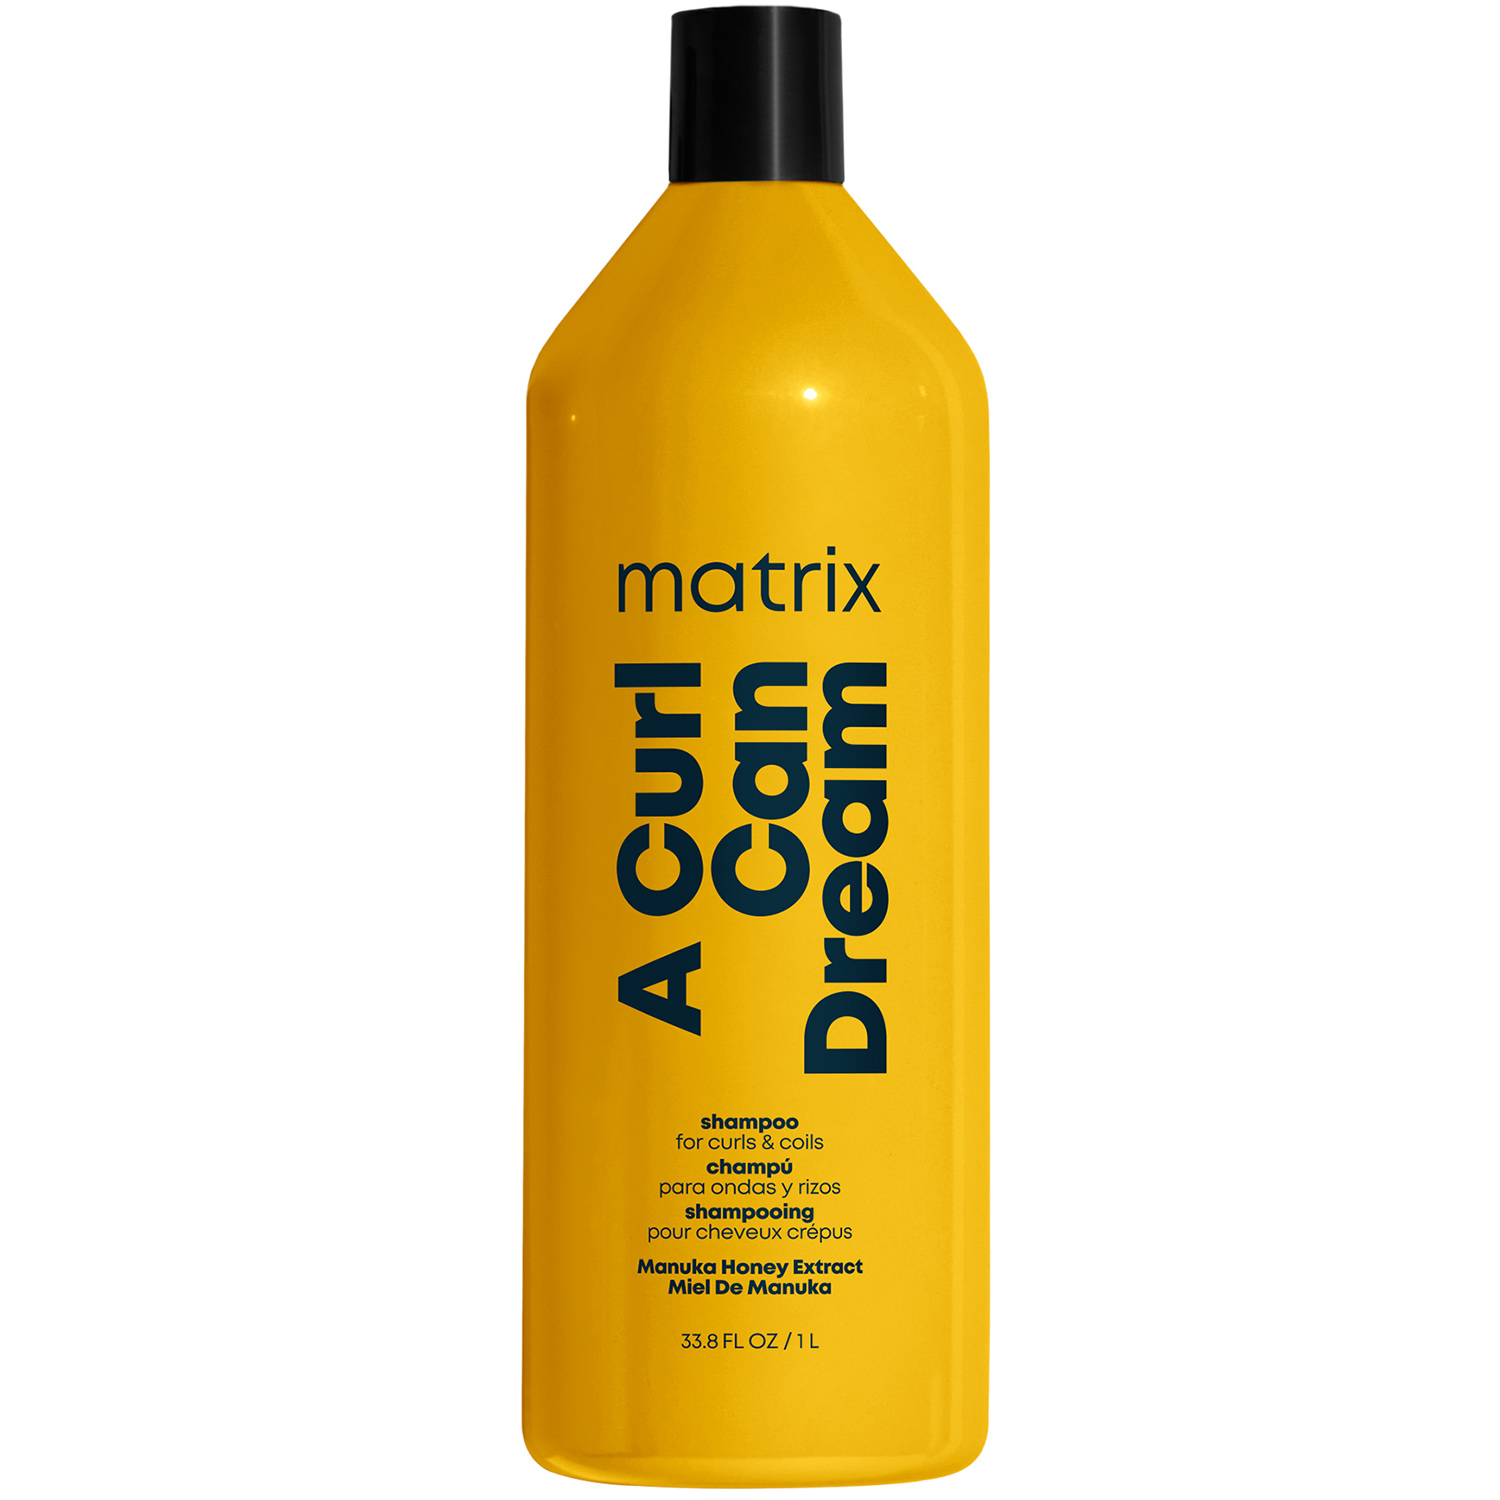 Matrix Шампунь с медом манука для кудрявых и вьющихся волос, 1000 мл (Matrix, Total results) шампунь для кудрявых волос matrix a curl can dream 300 мл